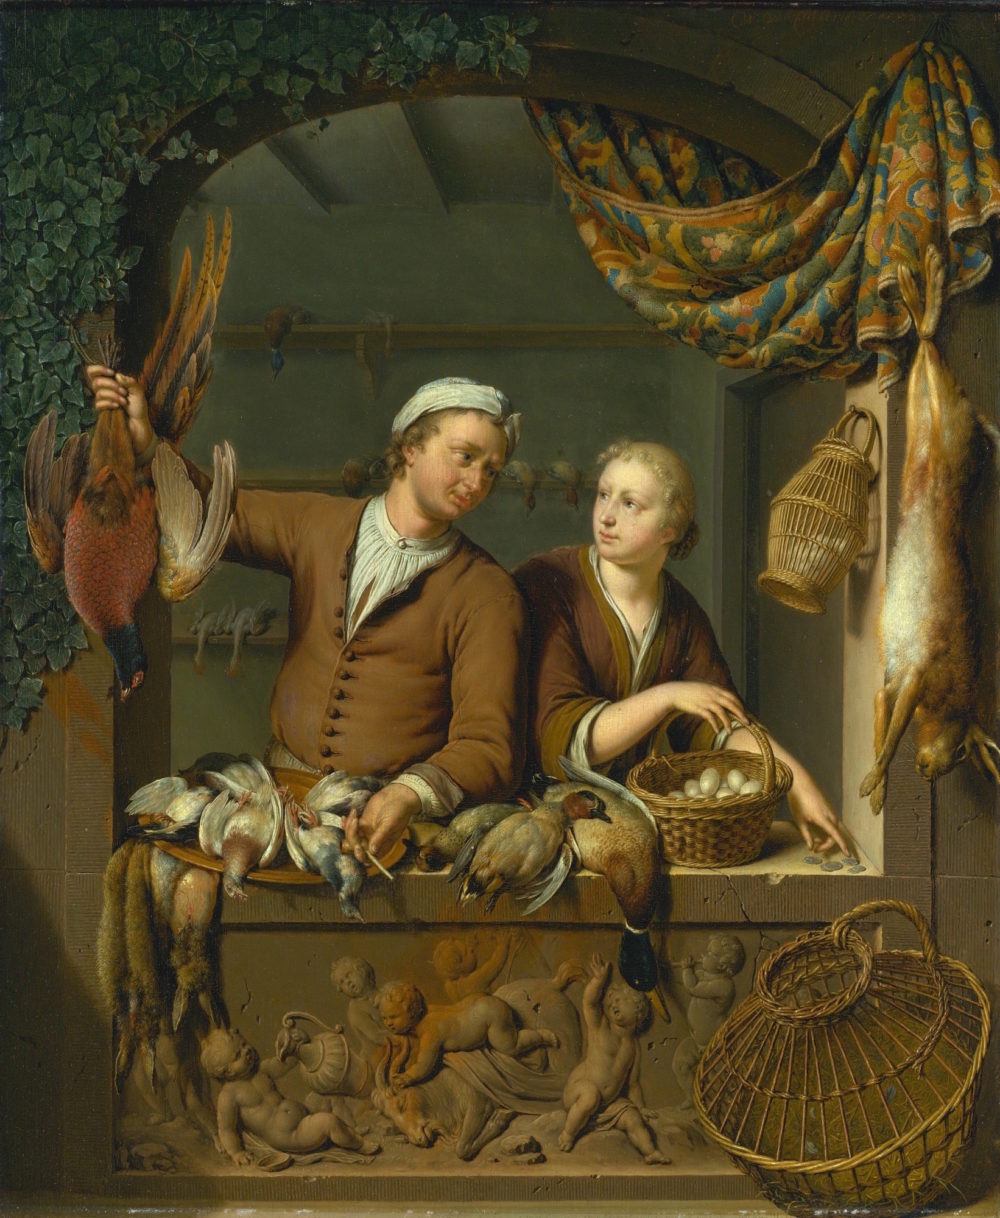 mieris, willem van the poult - genre scene - sotheby's - window treatment styles